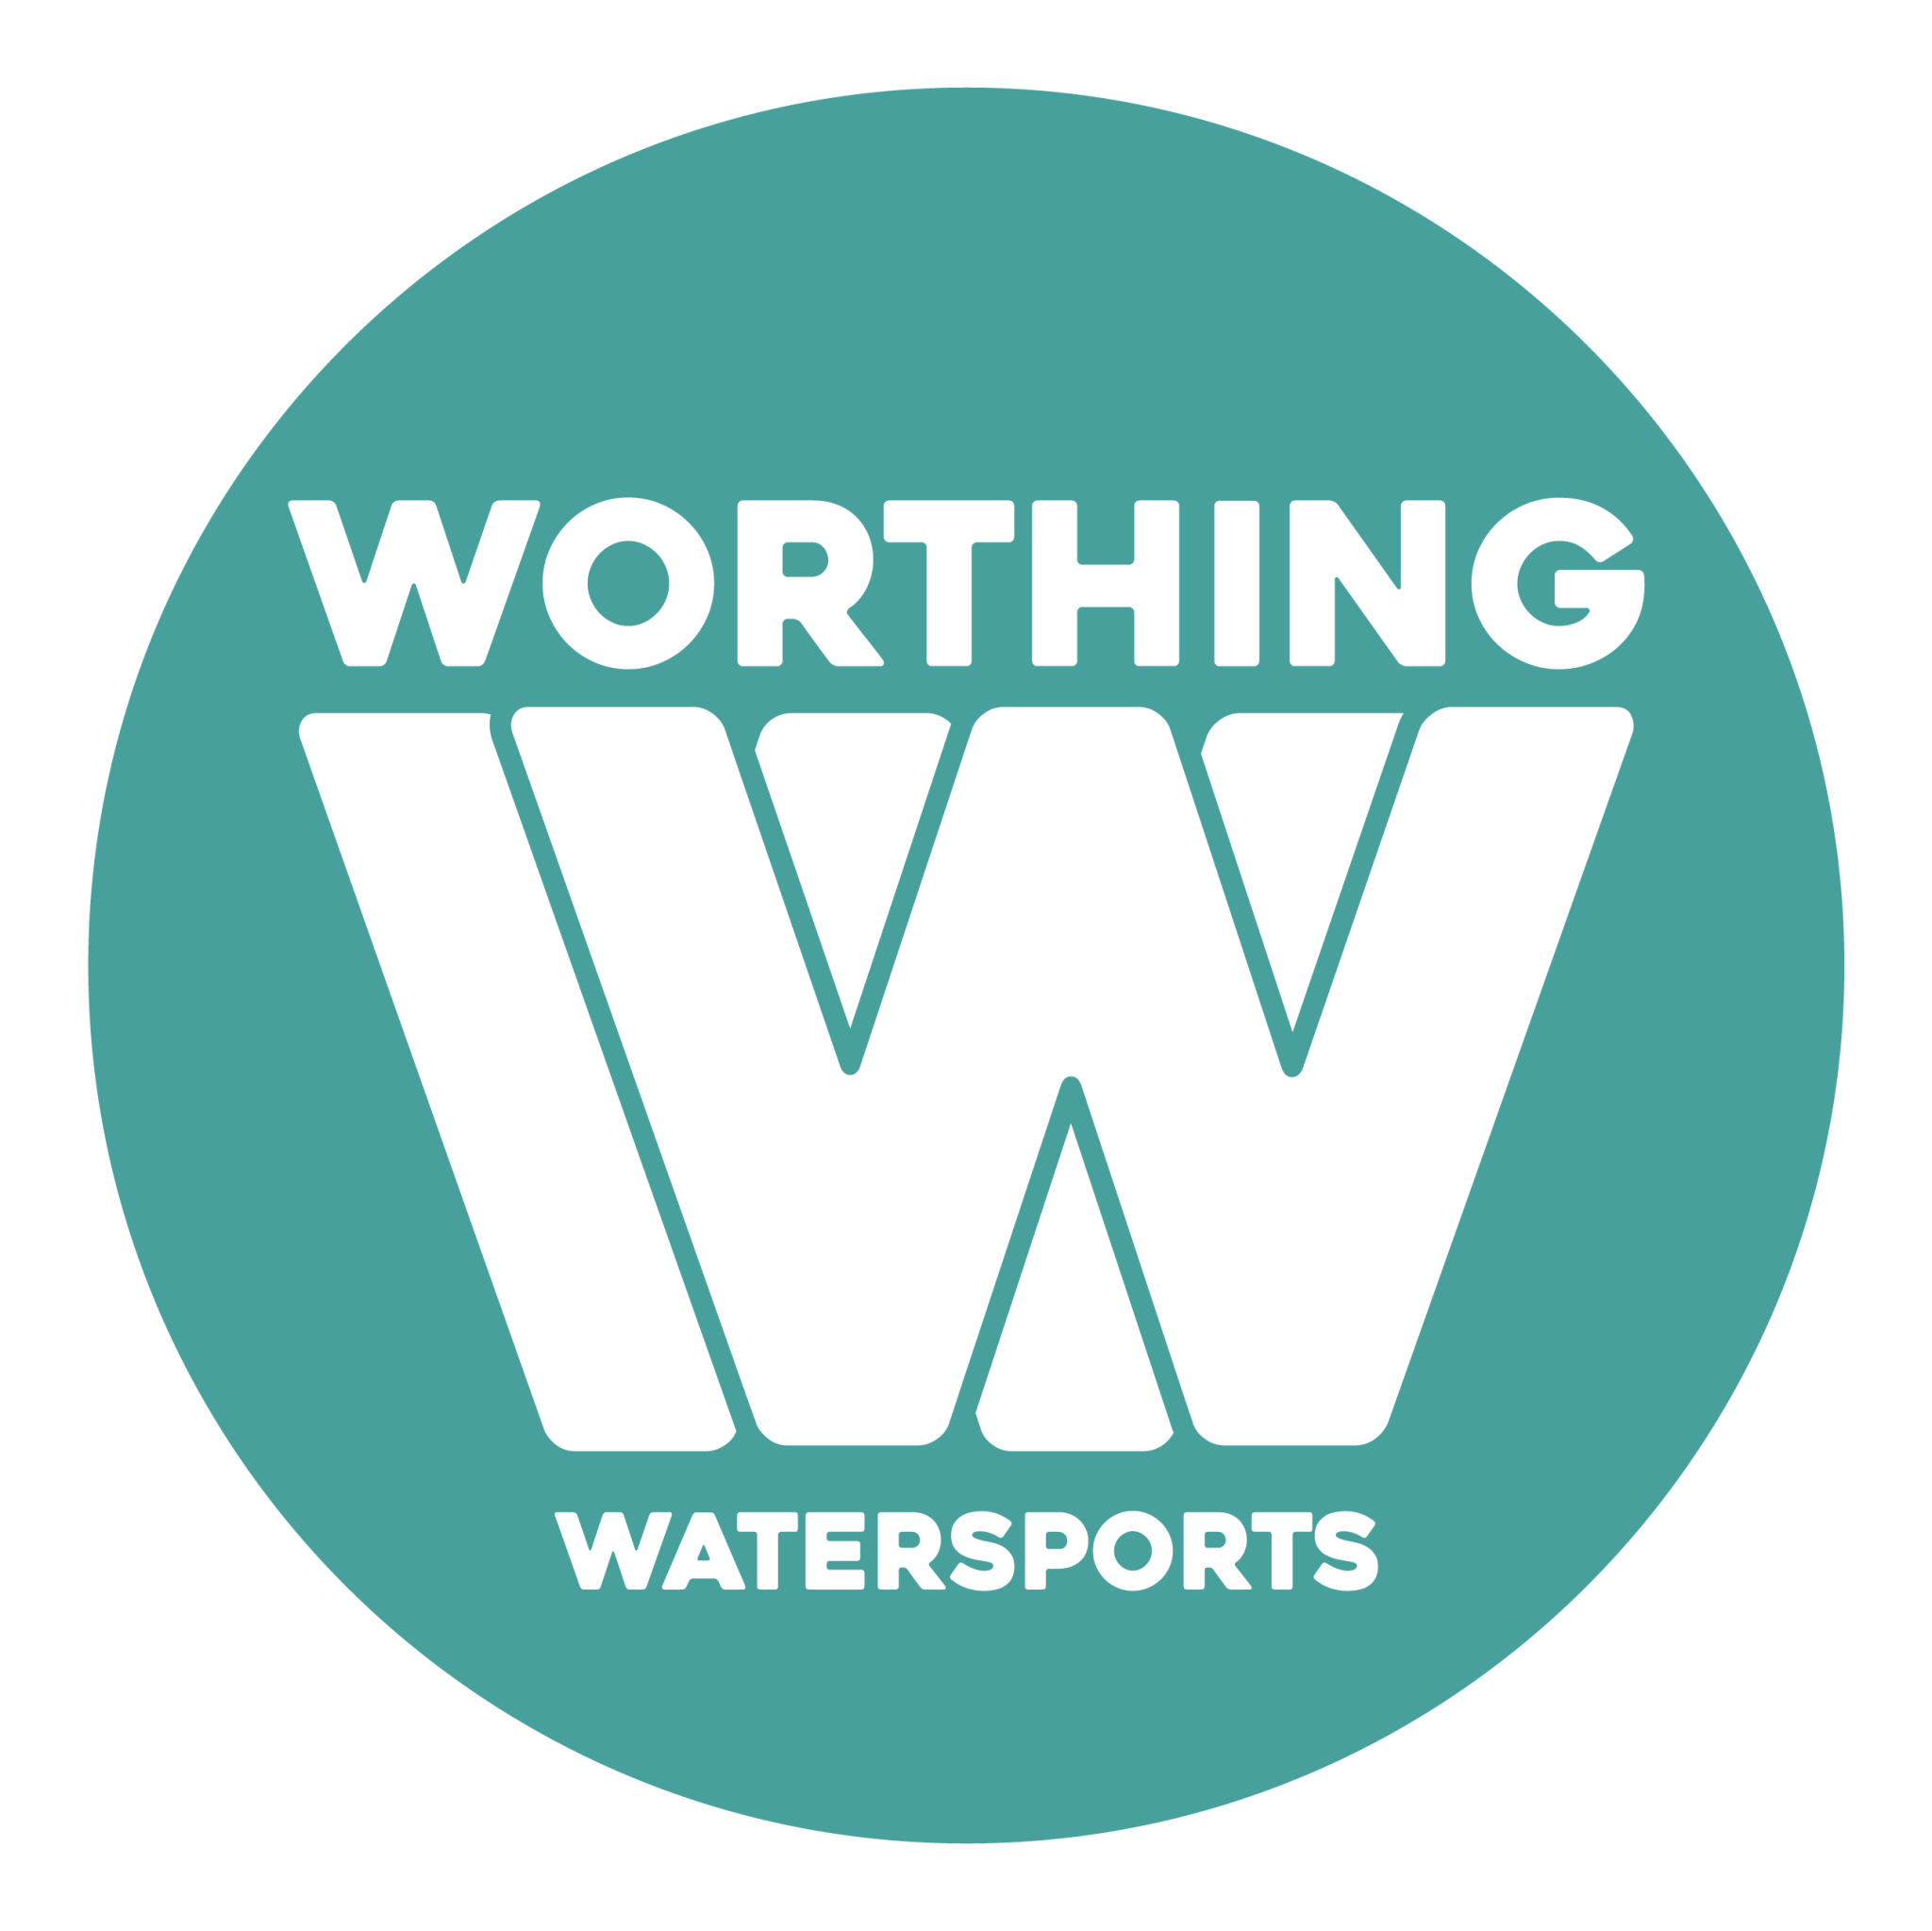 Worthing Watersports - Worthing Watersports